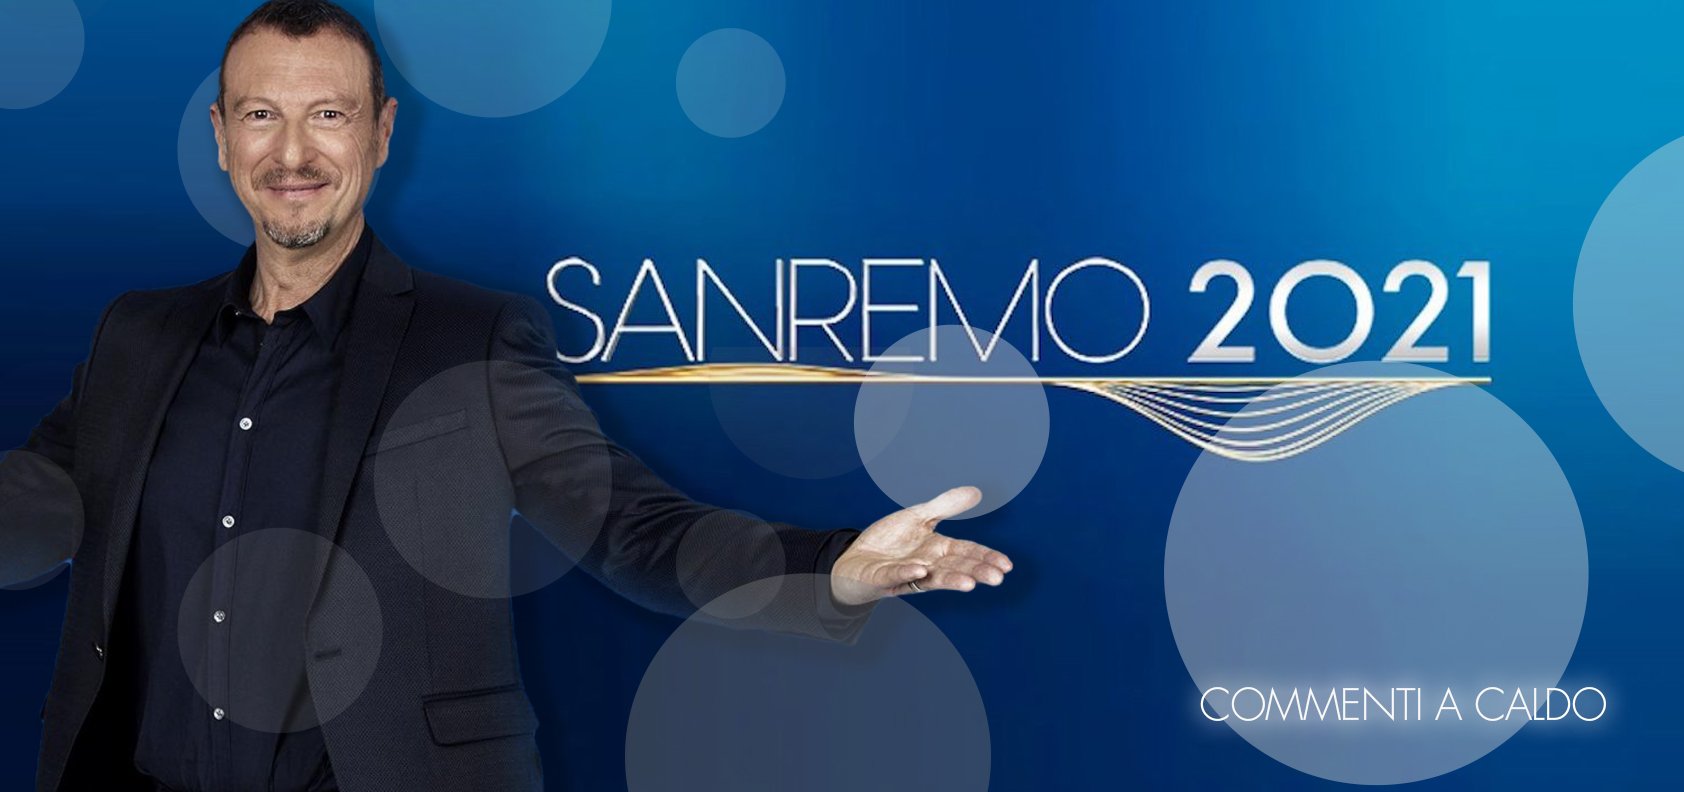 Sanremo 2021, la quarta serata: commenti a caldo